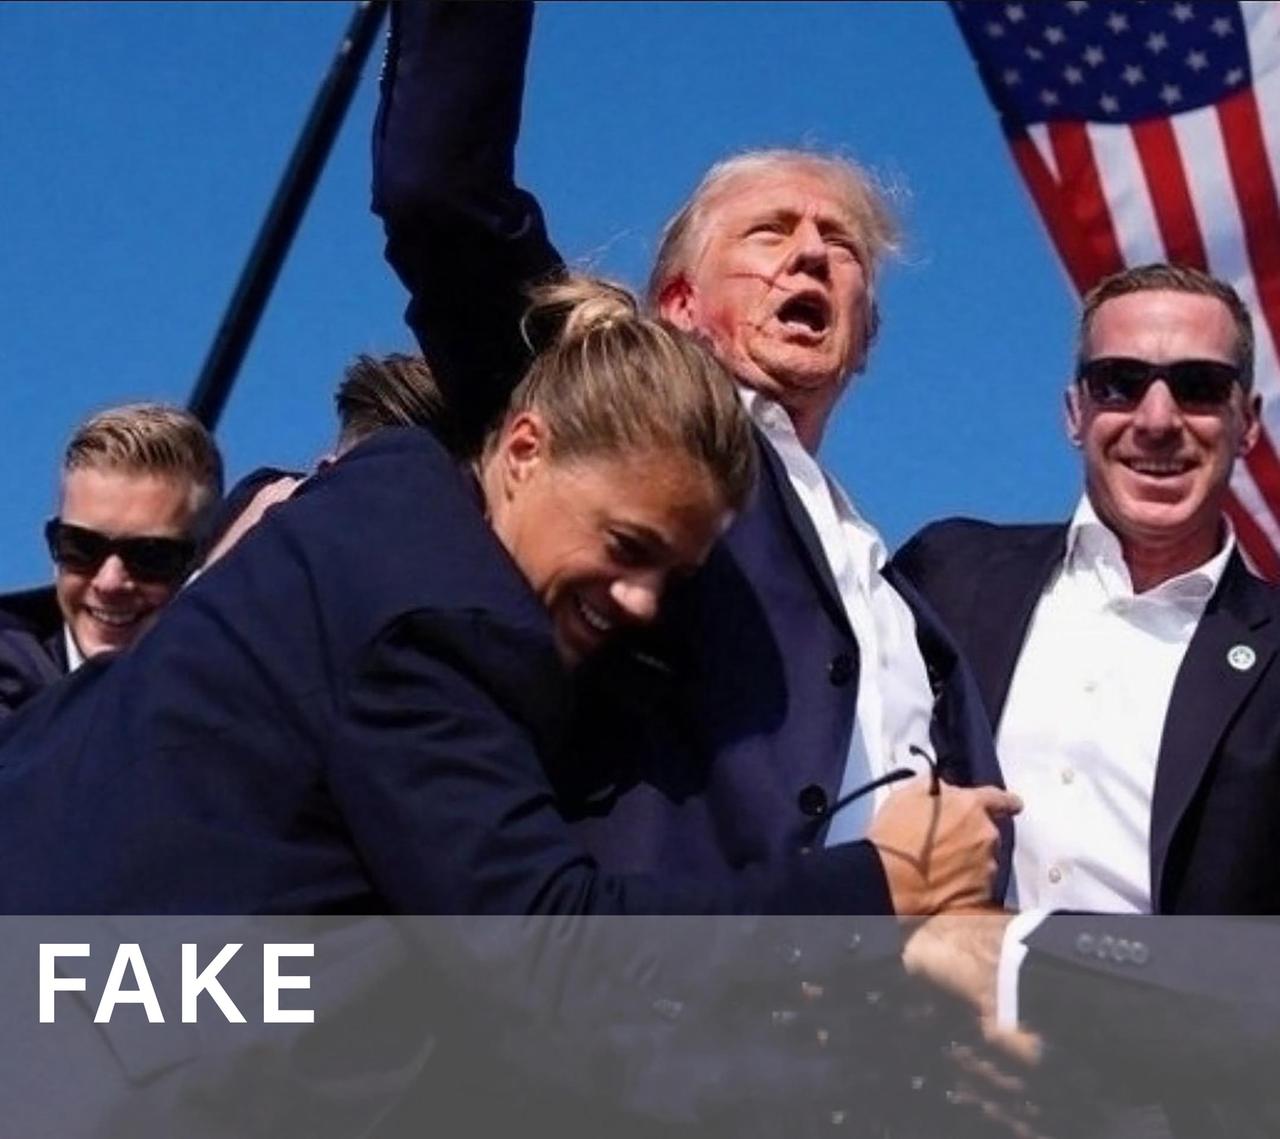 Donald Trump, Fake, Security Service, X